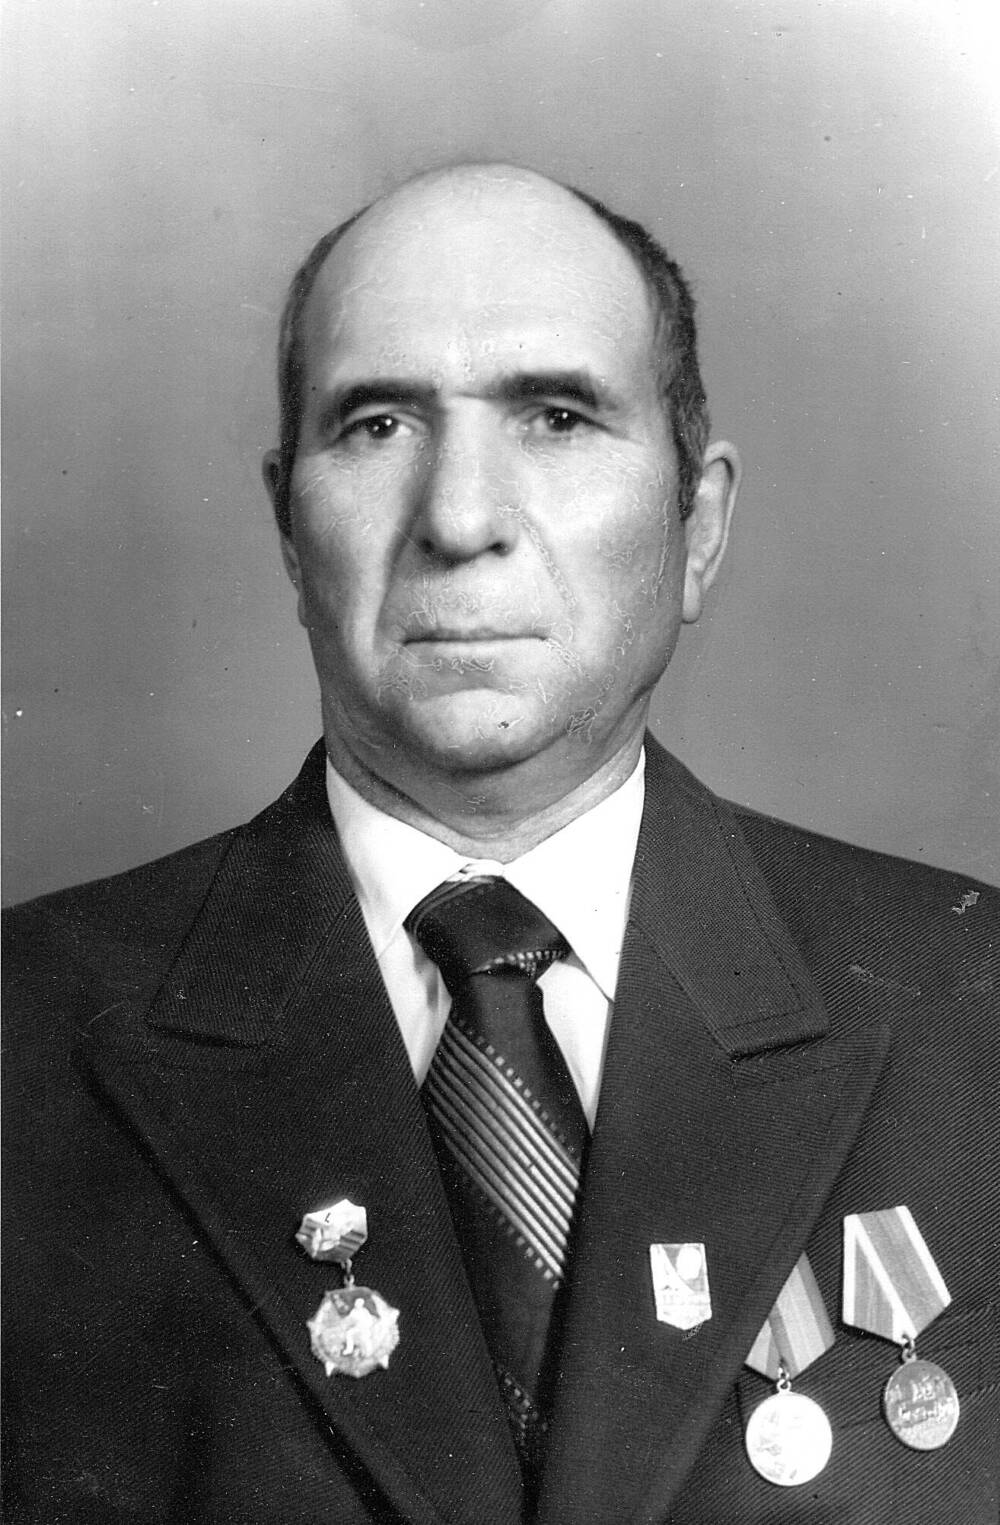 Фотография черно-белая Лисицы Михаила Сергеевича, ветерана Великой Отечественной войны 1941-1945 г. г.